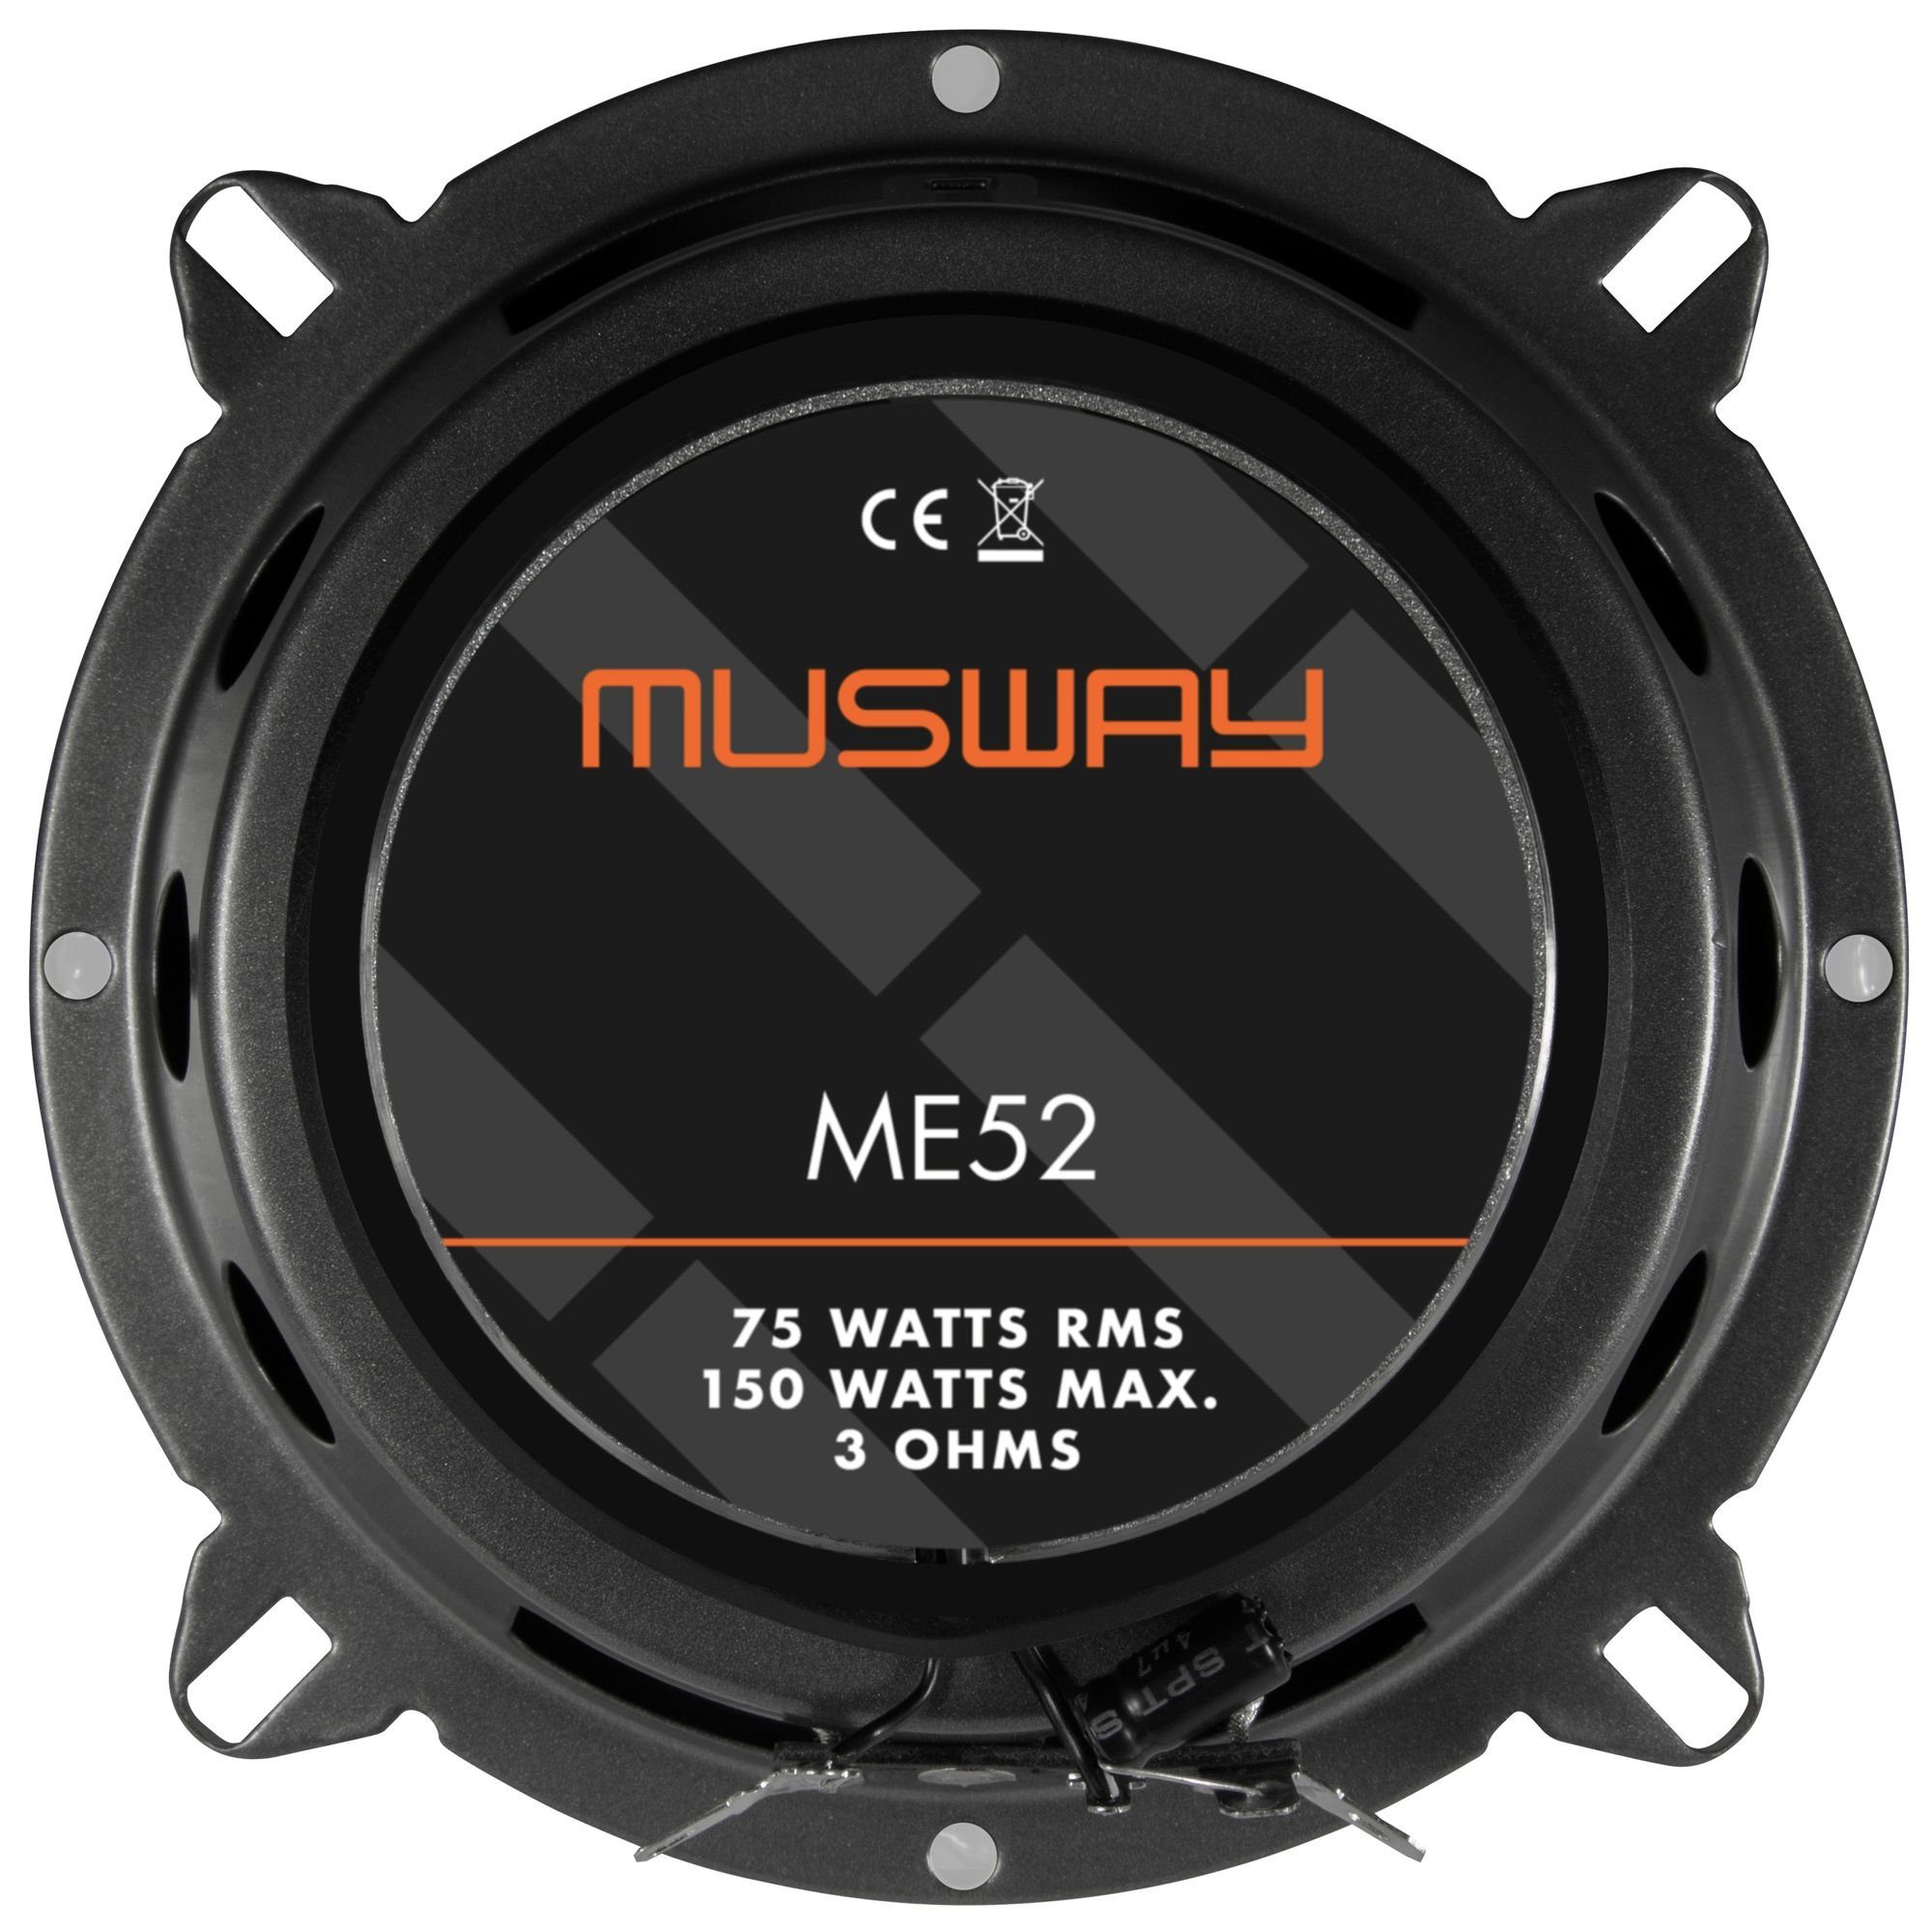 13cm (Musway ME52 ME52 - - Lautsprecher) Koax Lautsprecher Koax Musway 13cm Musway Auto-Lautsprecher